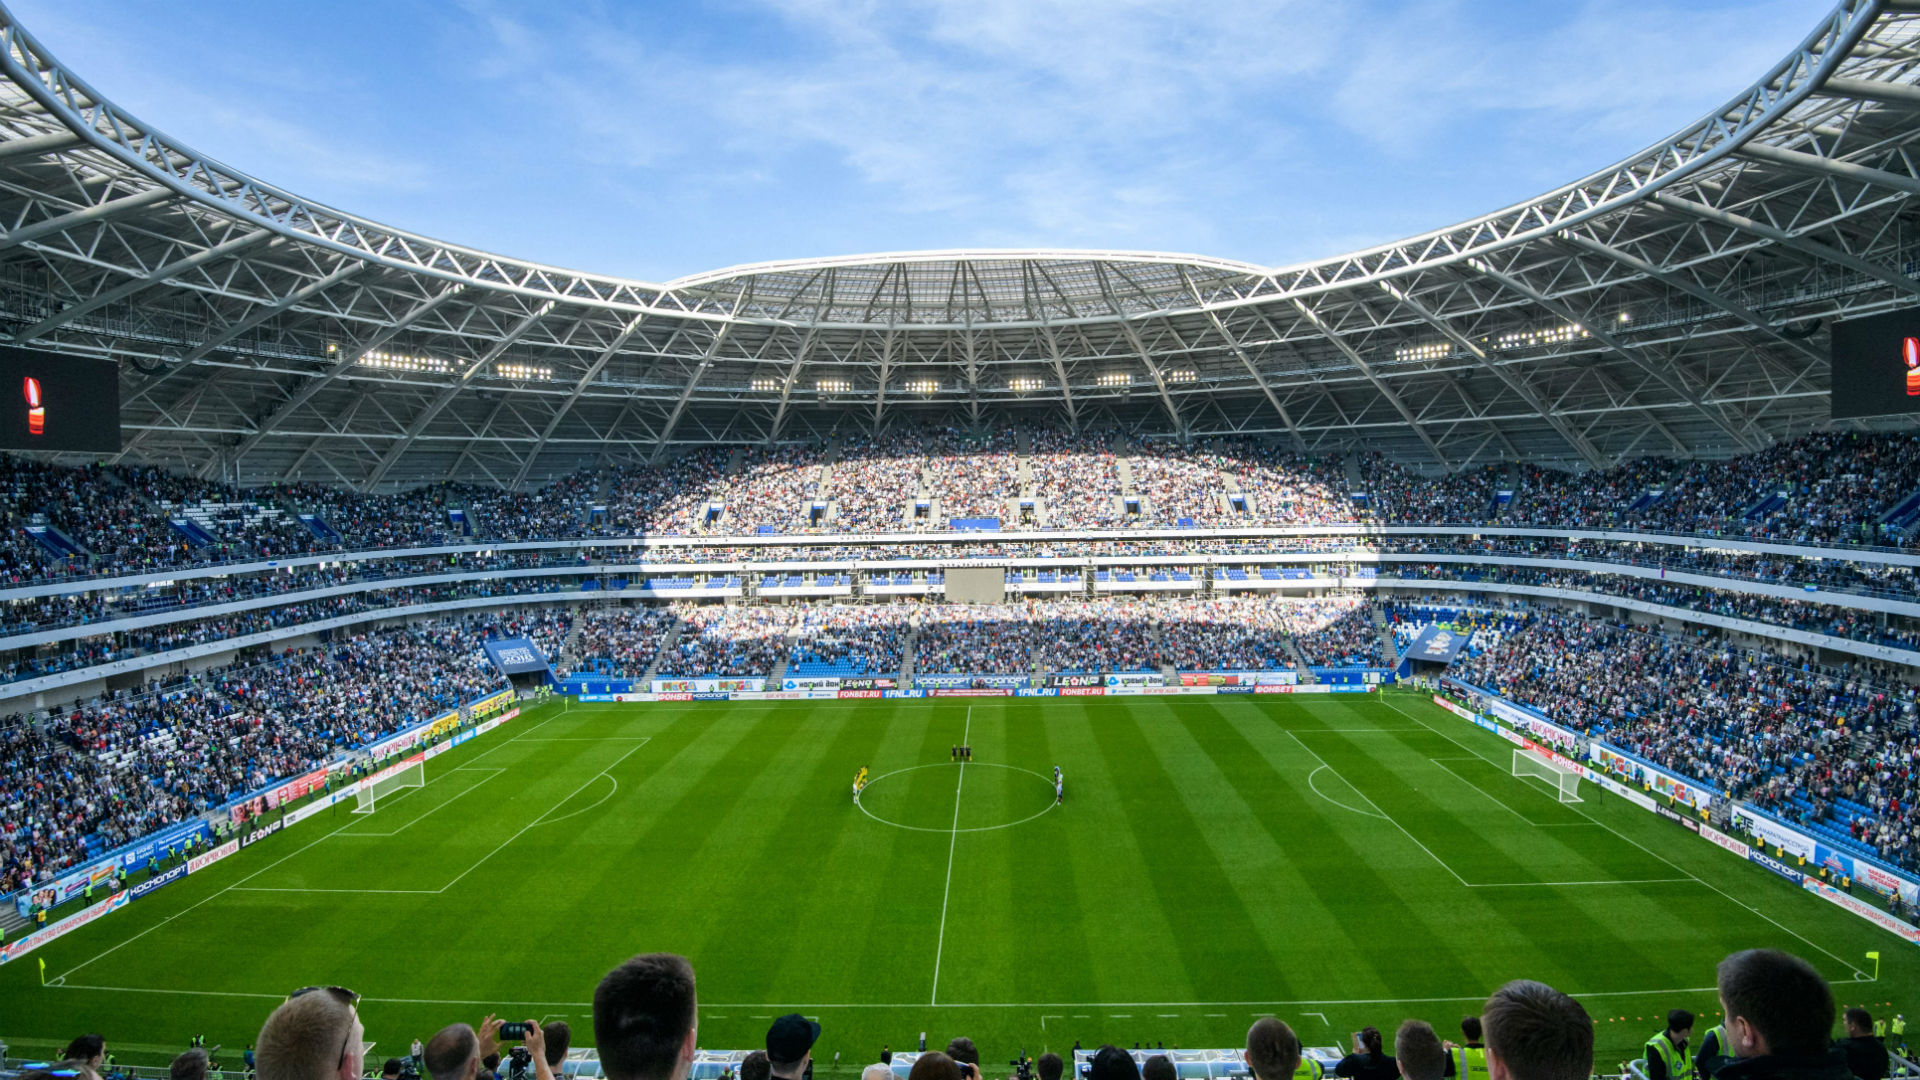 卢日尼基体育场 所在城市:莫斯科 承载能力: 81,000人 俄罗斯最大的